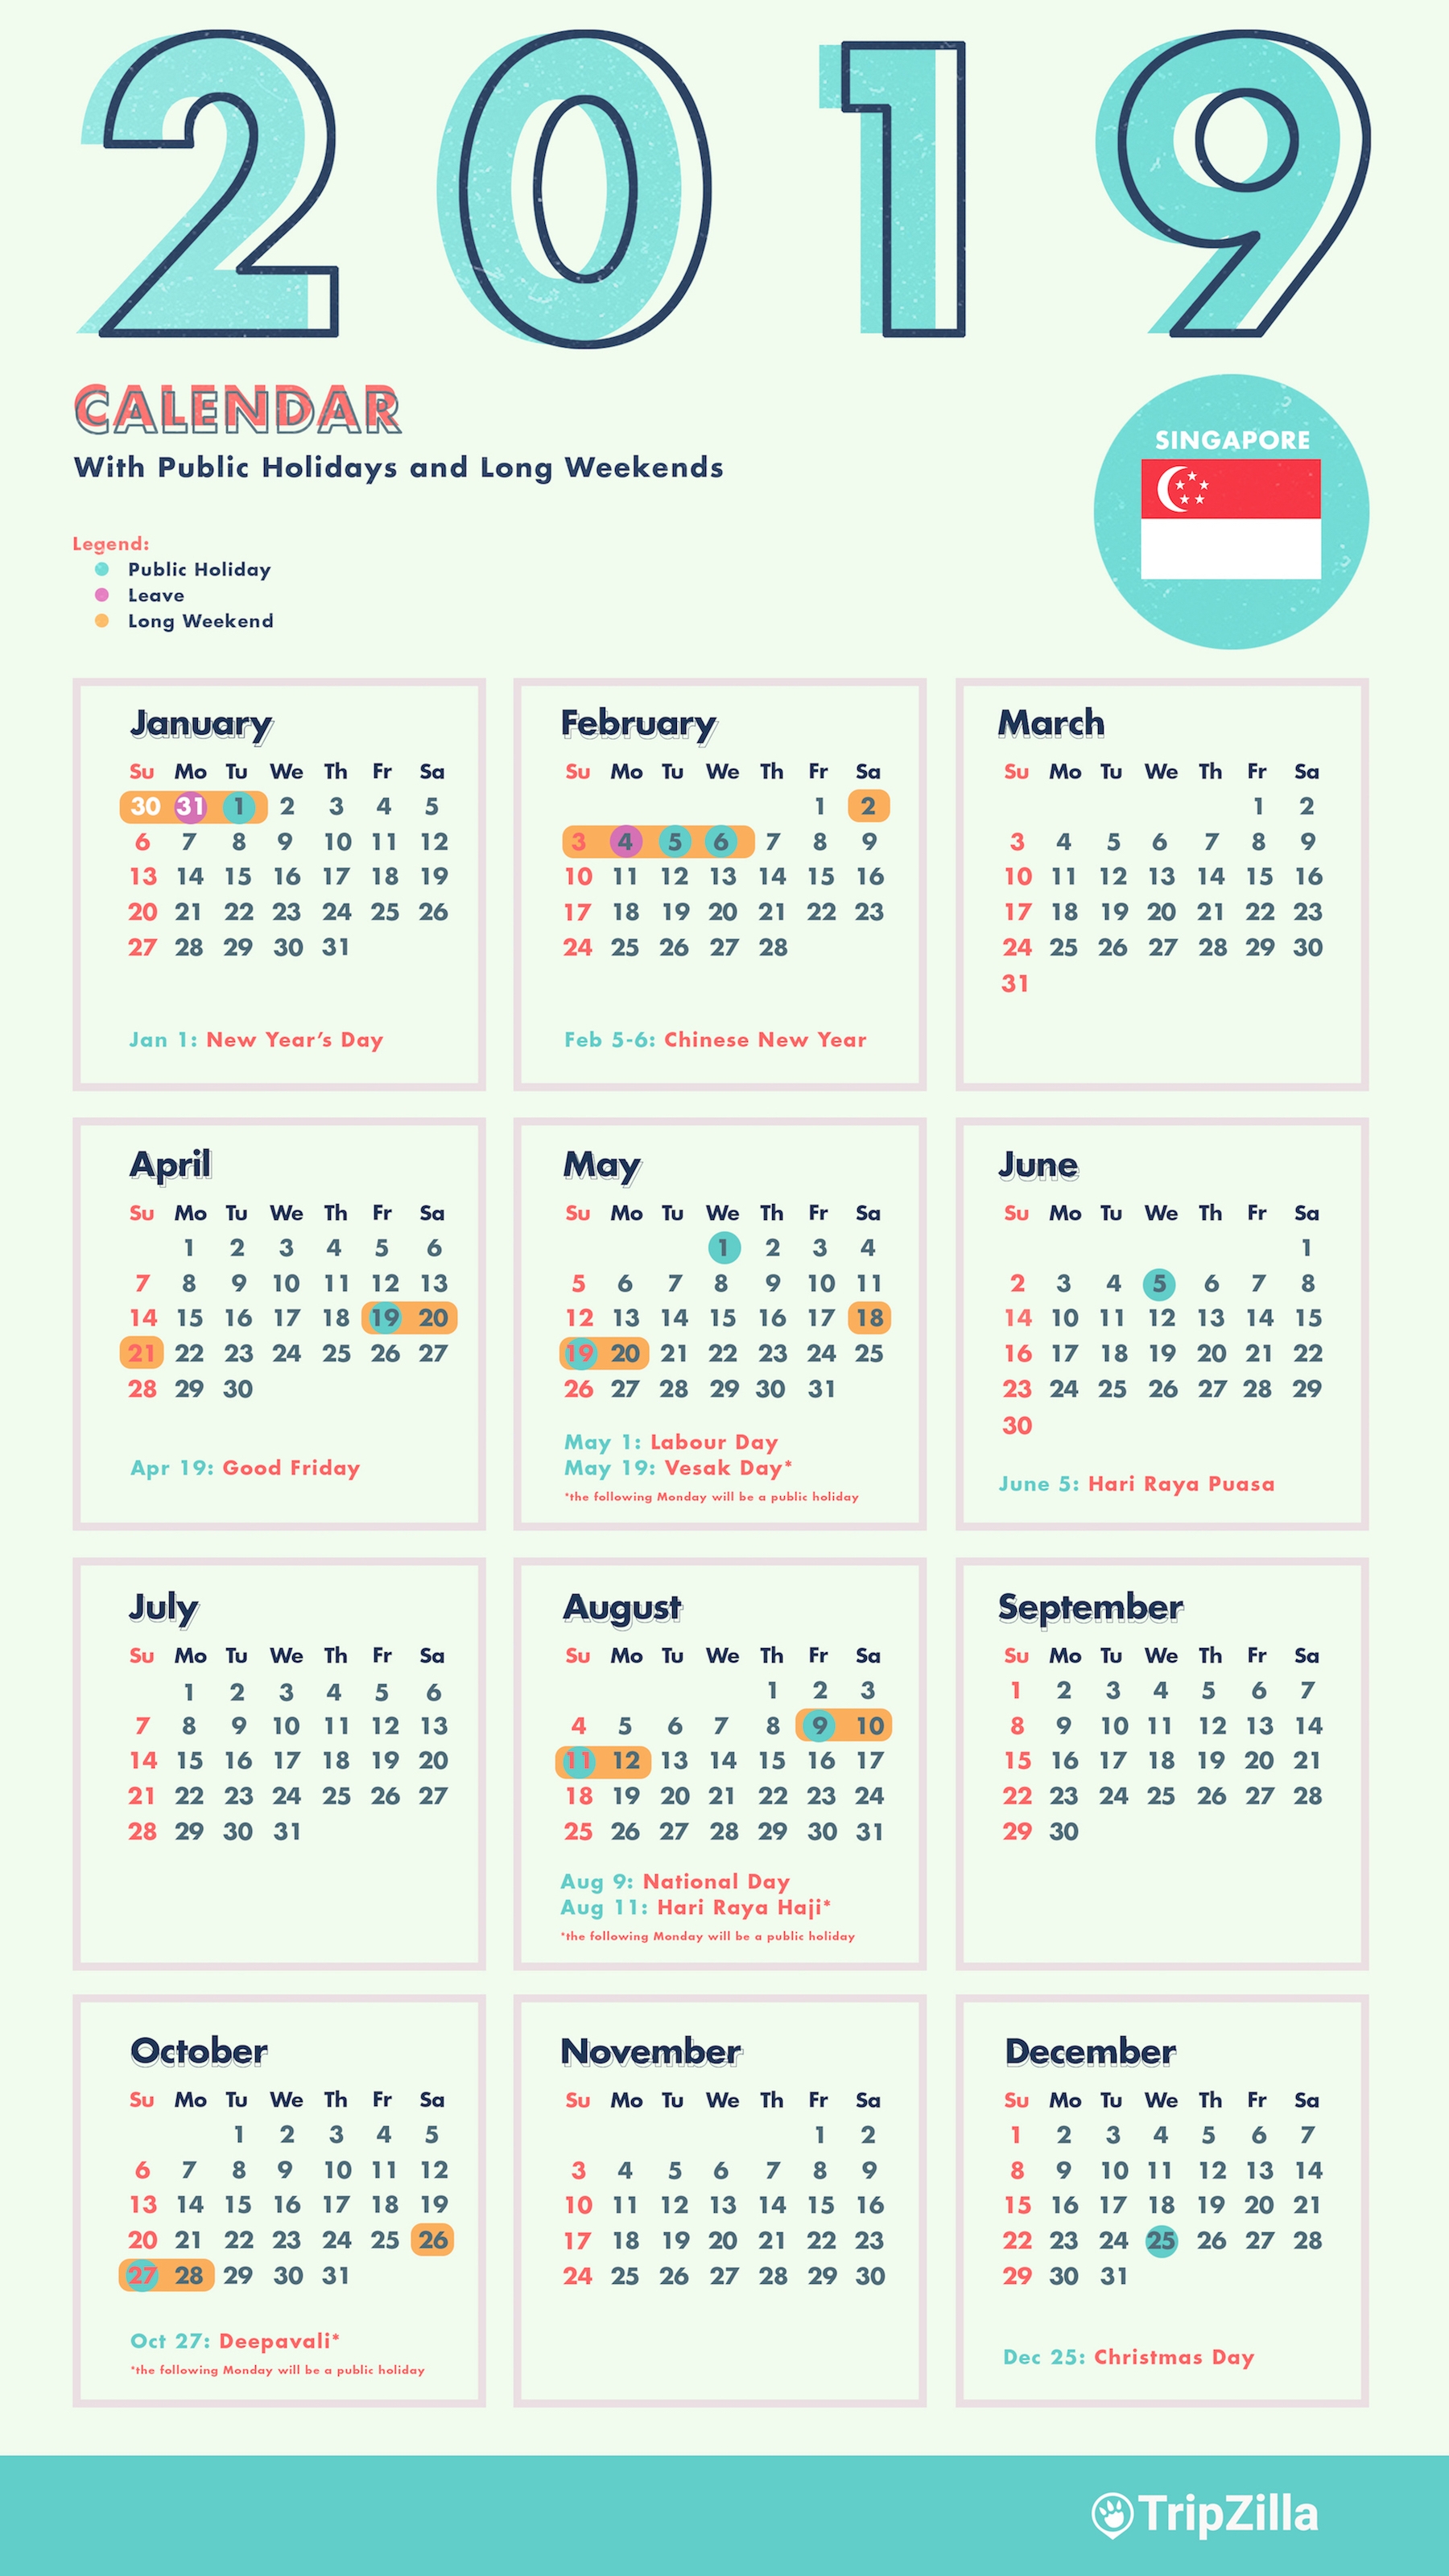 6 Long Weekends In Singapore In 2019 Bonus Calendar Cheatsheet